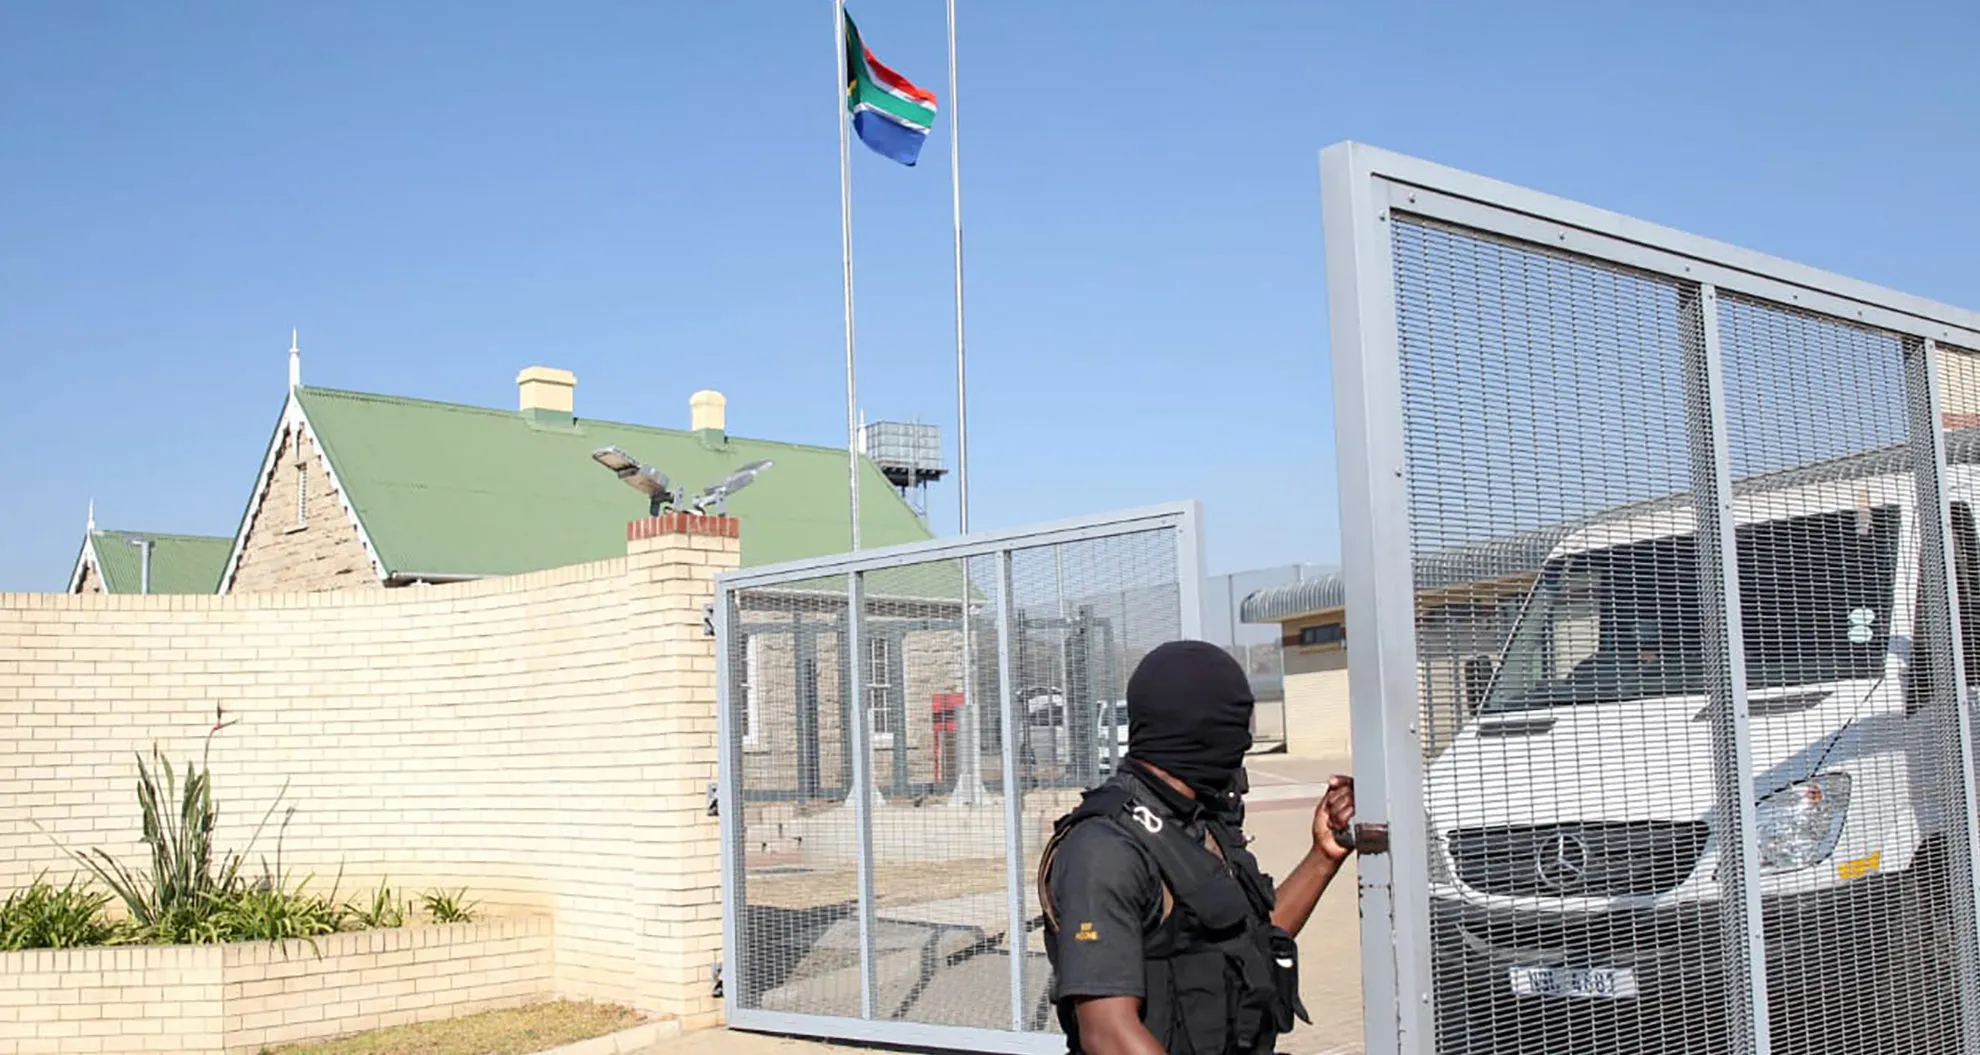 Estcourt Correctional Centre, Jacob Zuma